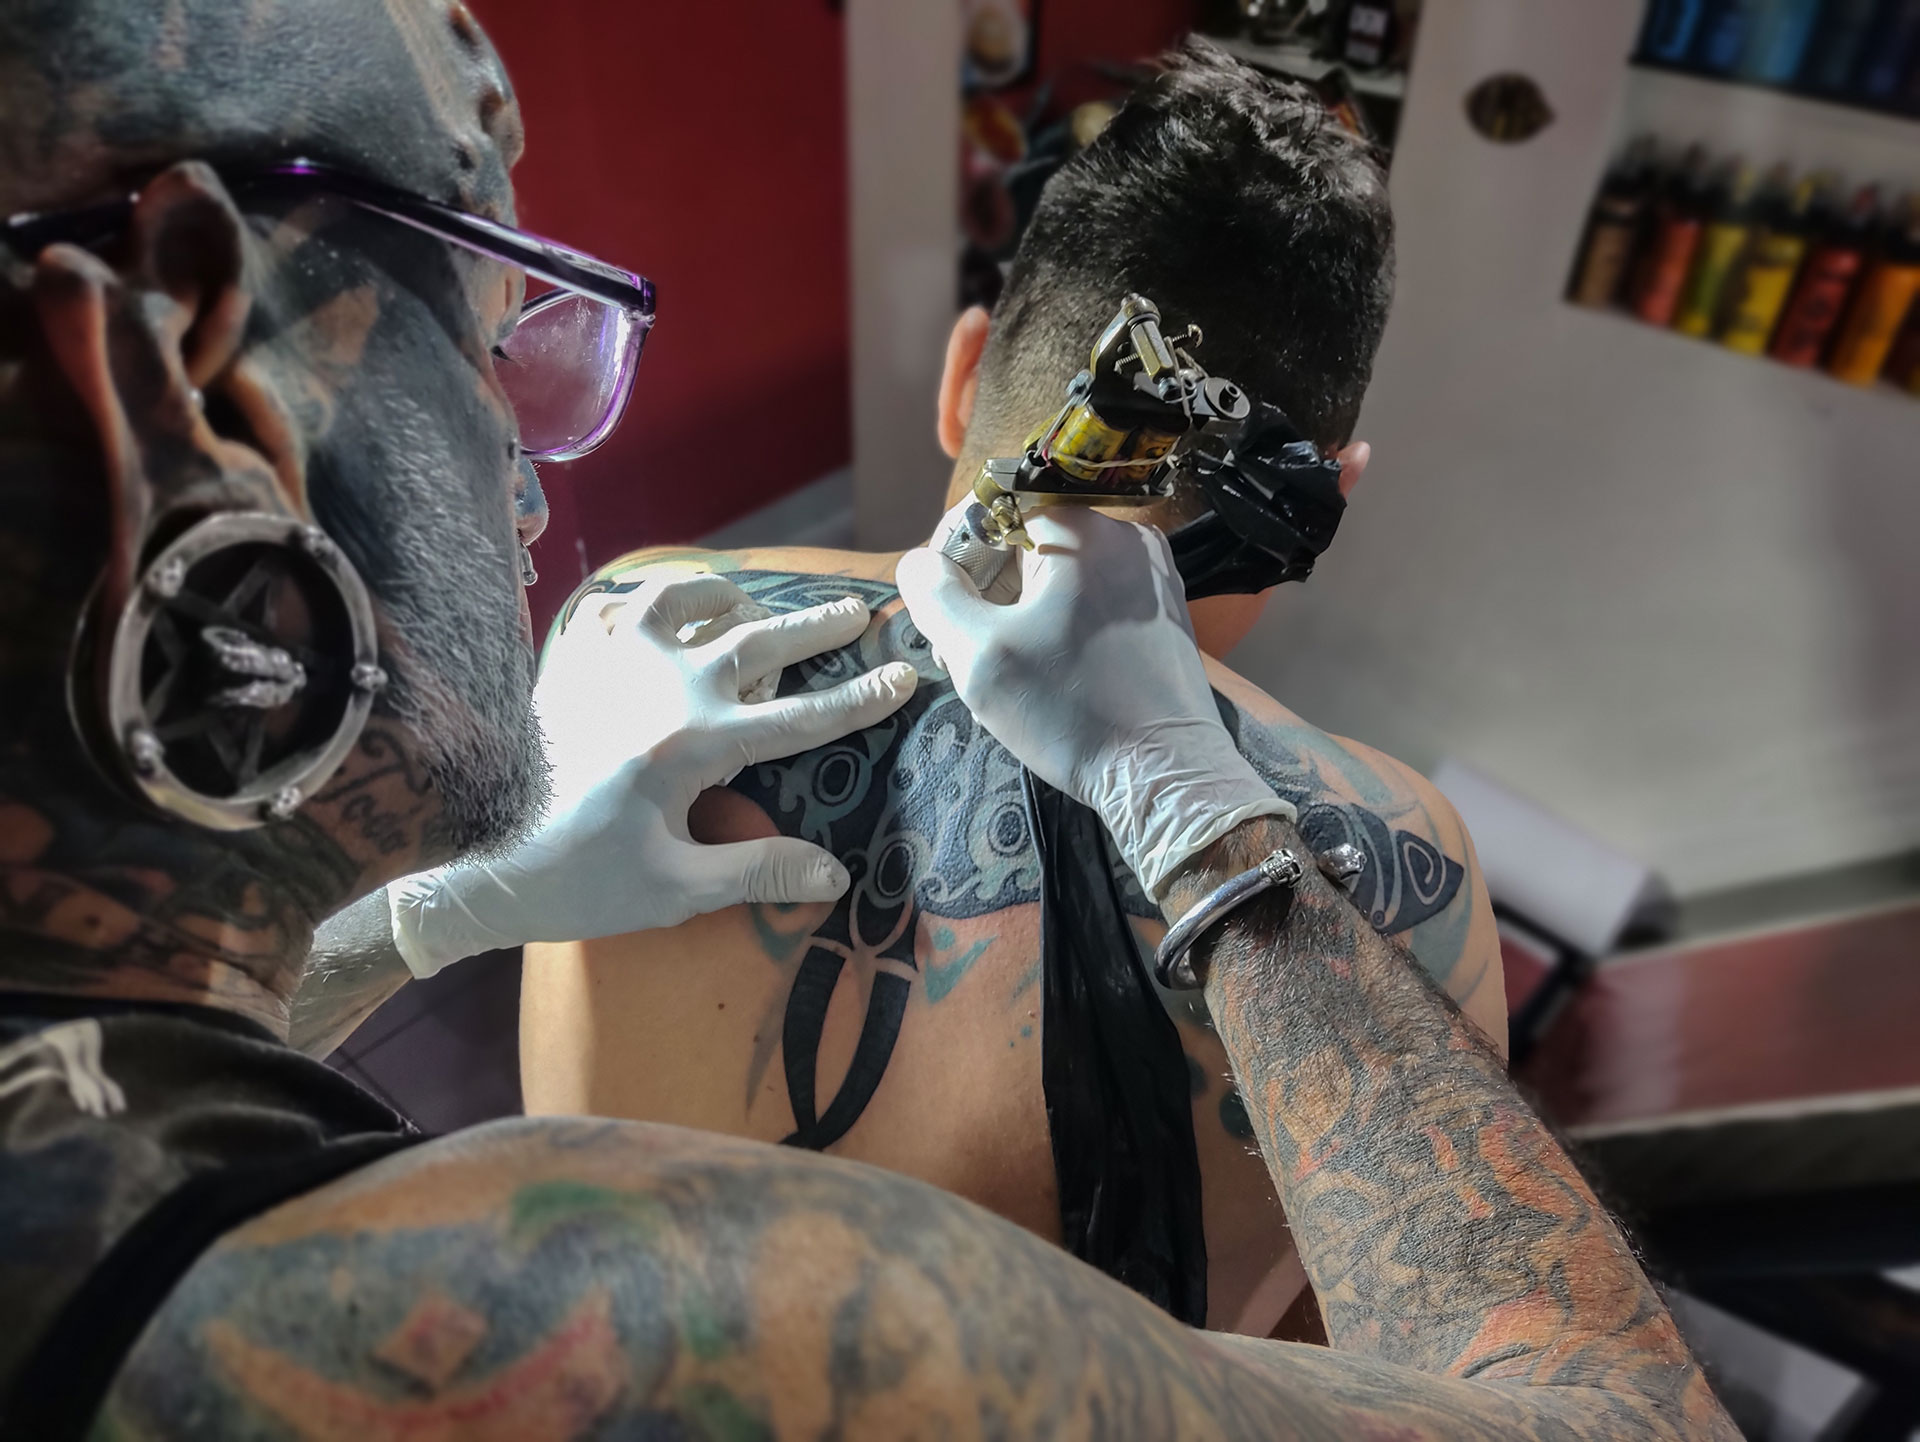 En plena obra: Víctor realizando un diseño en la espalda de un cliente brasileño que llegó para taparse un viejo tatuaje que ya no le gusta. Foto: Matías Arbotto